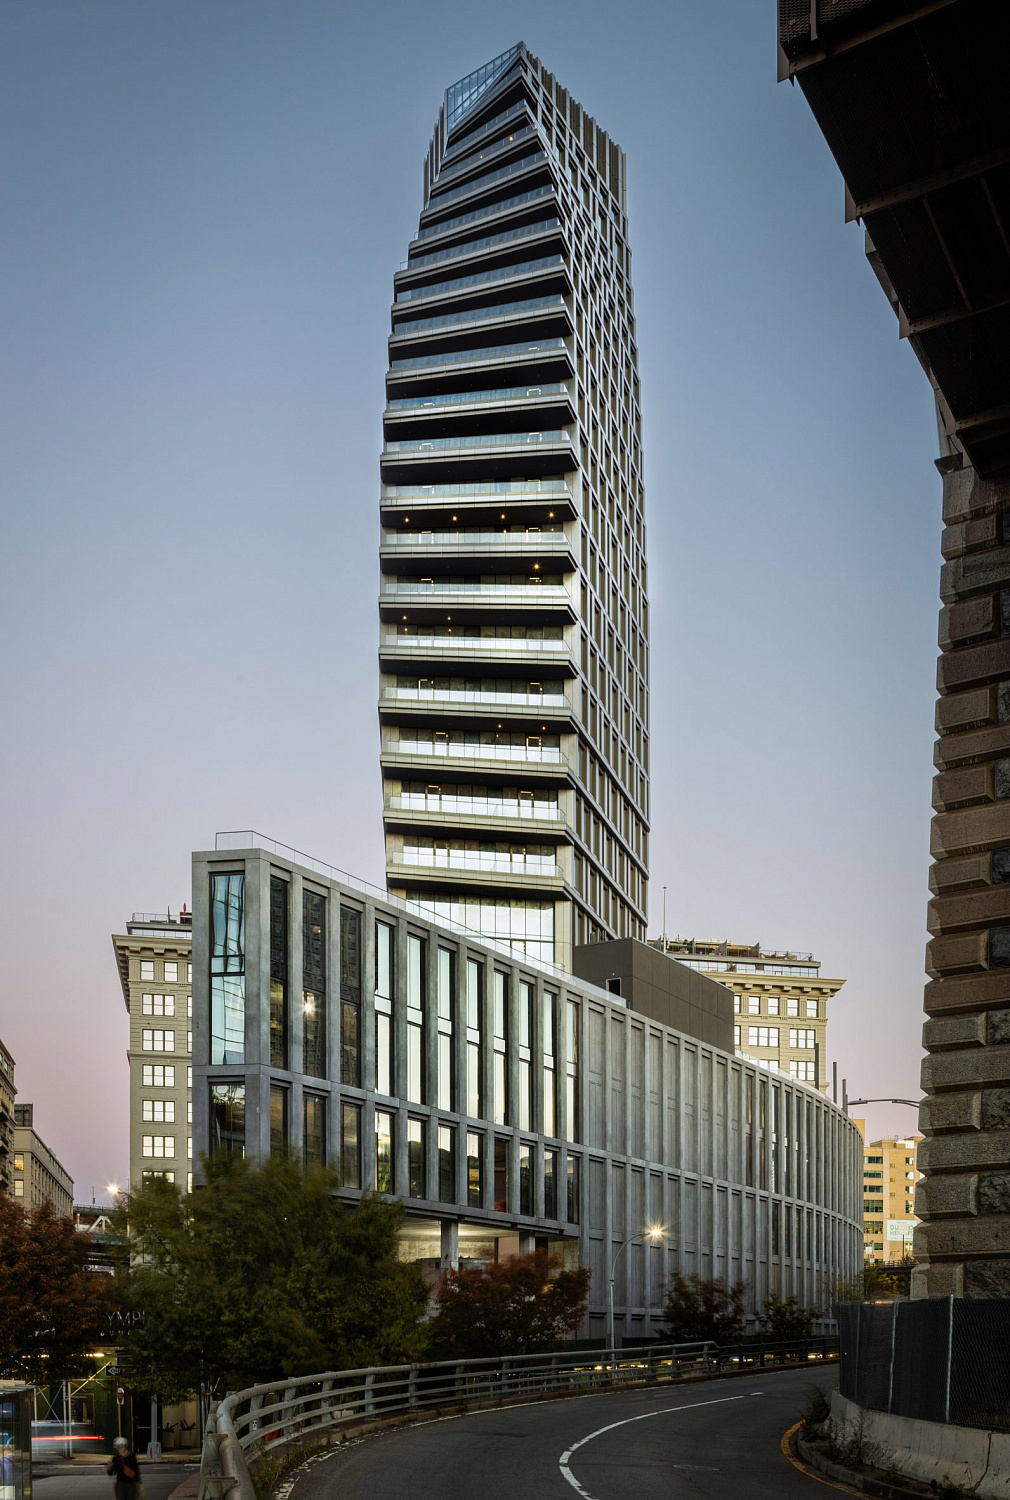 Hill West Architects завершила строительство небоскрёба в Дамбо, похожего на парус